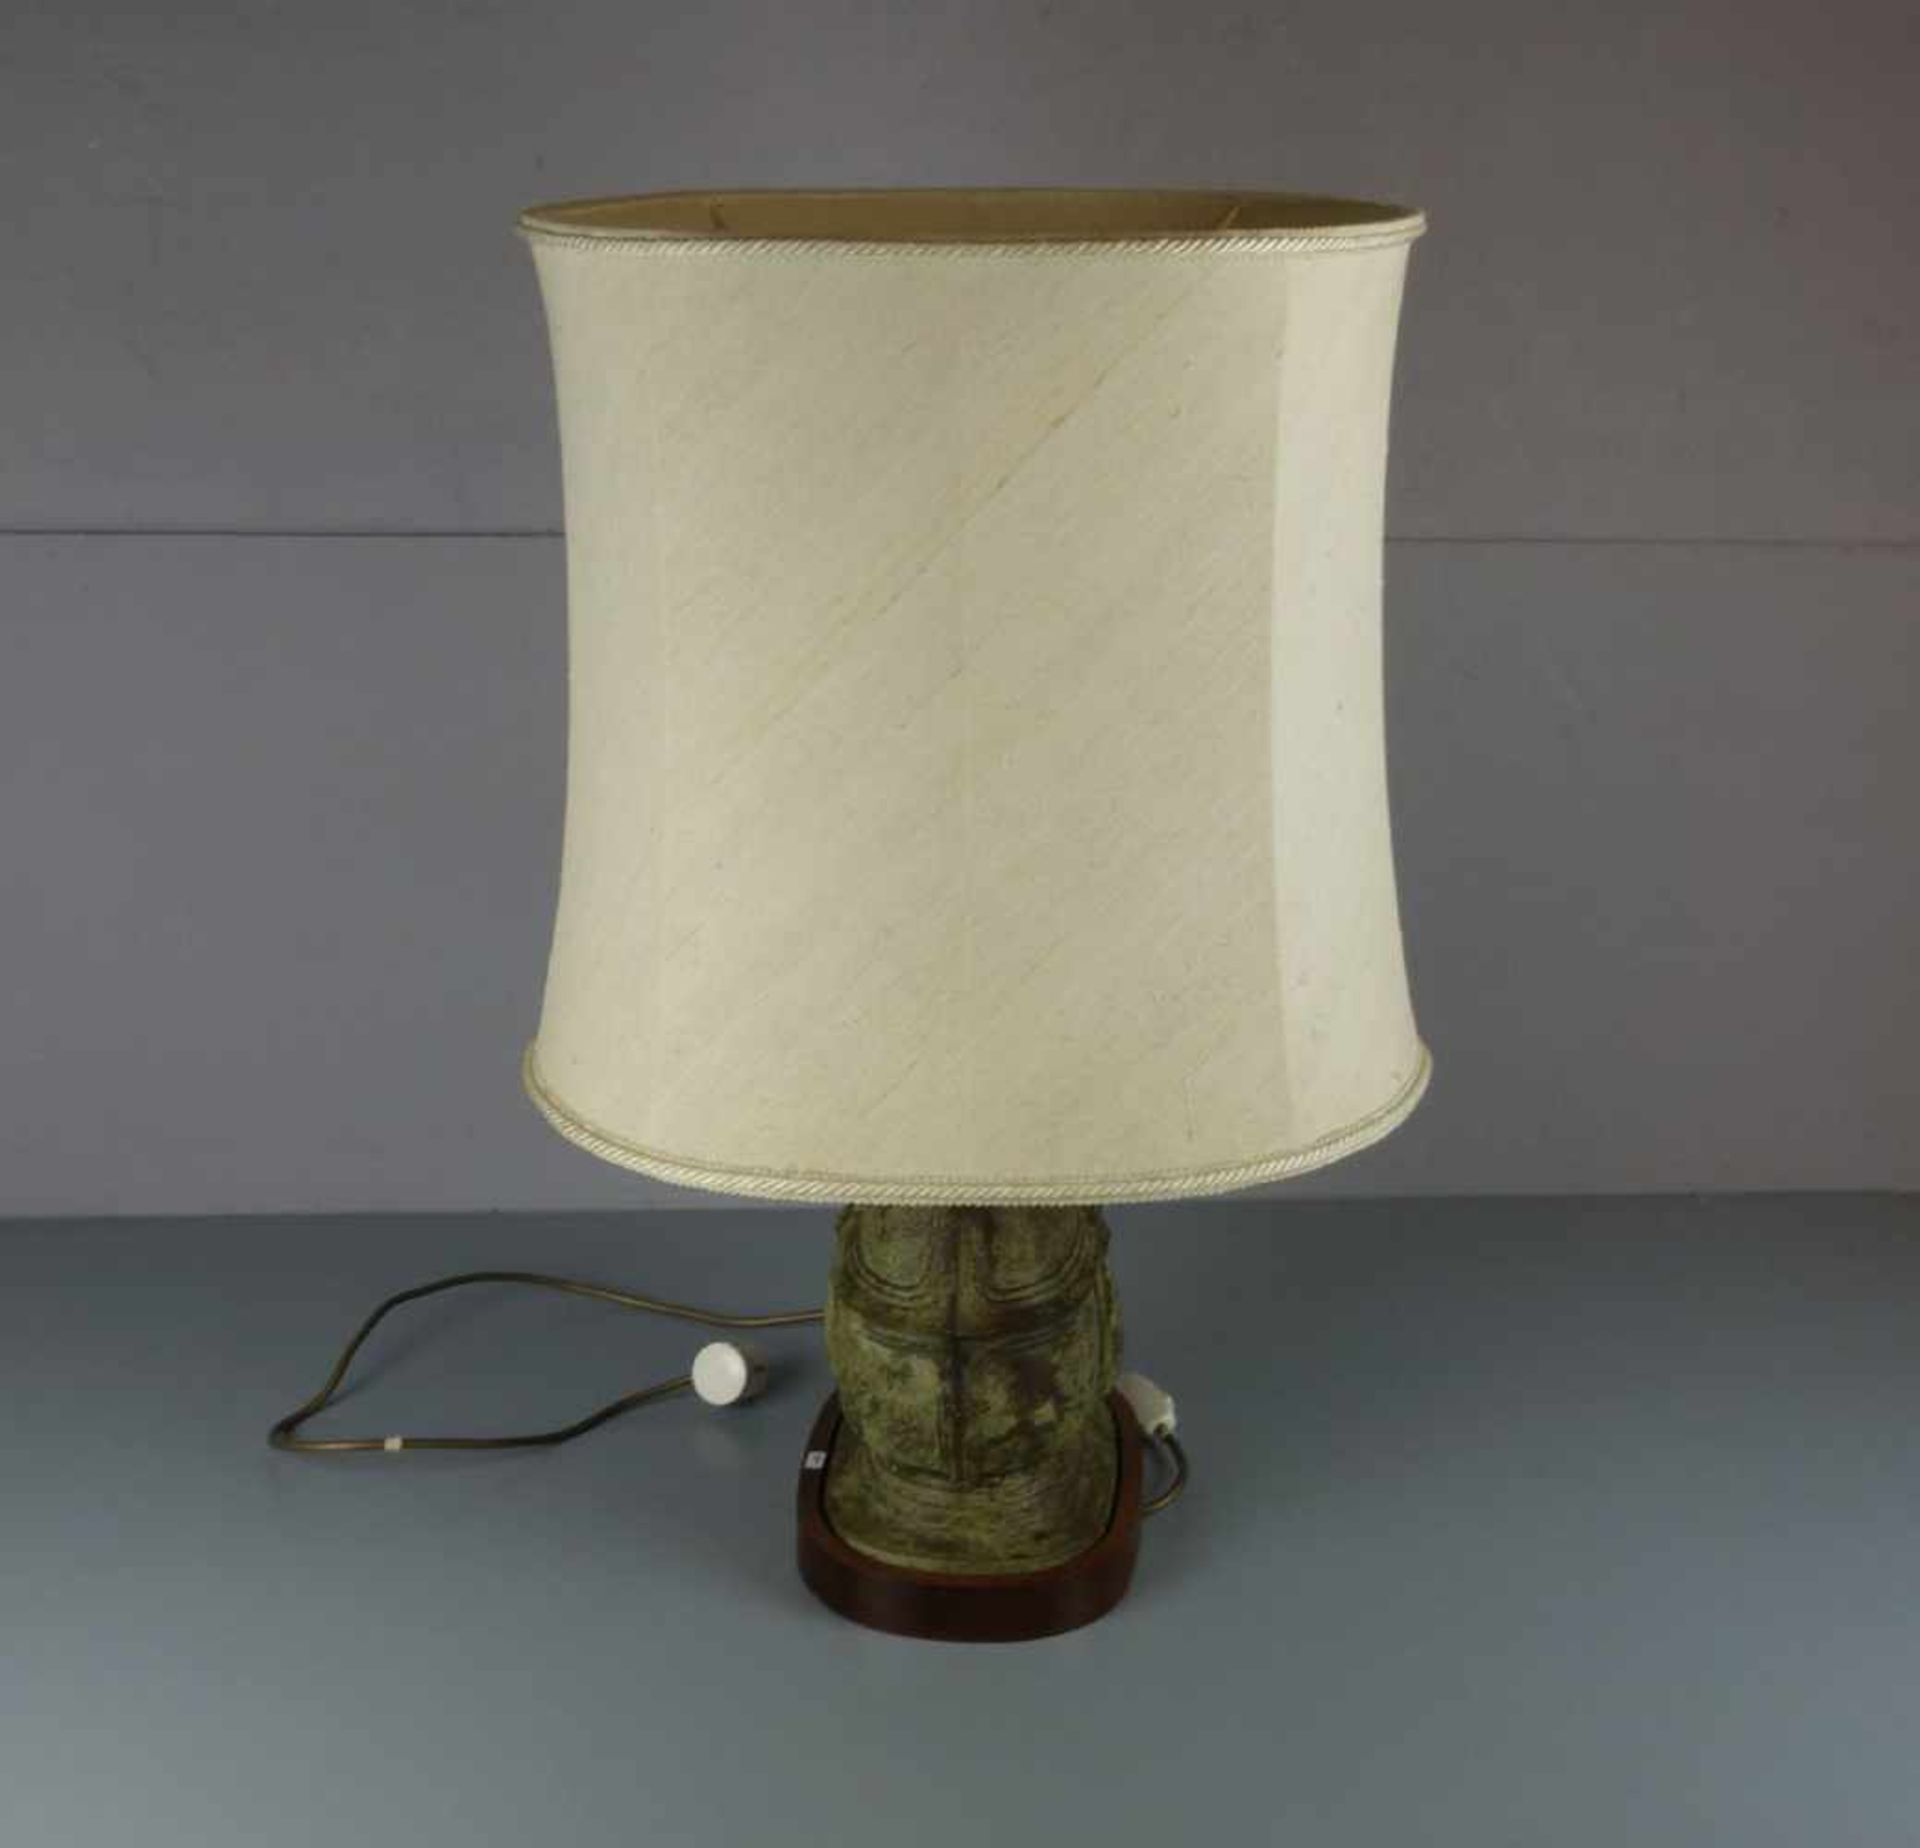 LAMPE / TISCHLAMPE MIT BRONZEVASE / table lamp, zweiflammige Brennstelle. Ovaler Holzstand, Schaft - Image 3 of 4